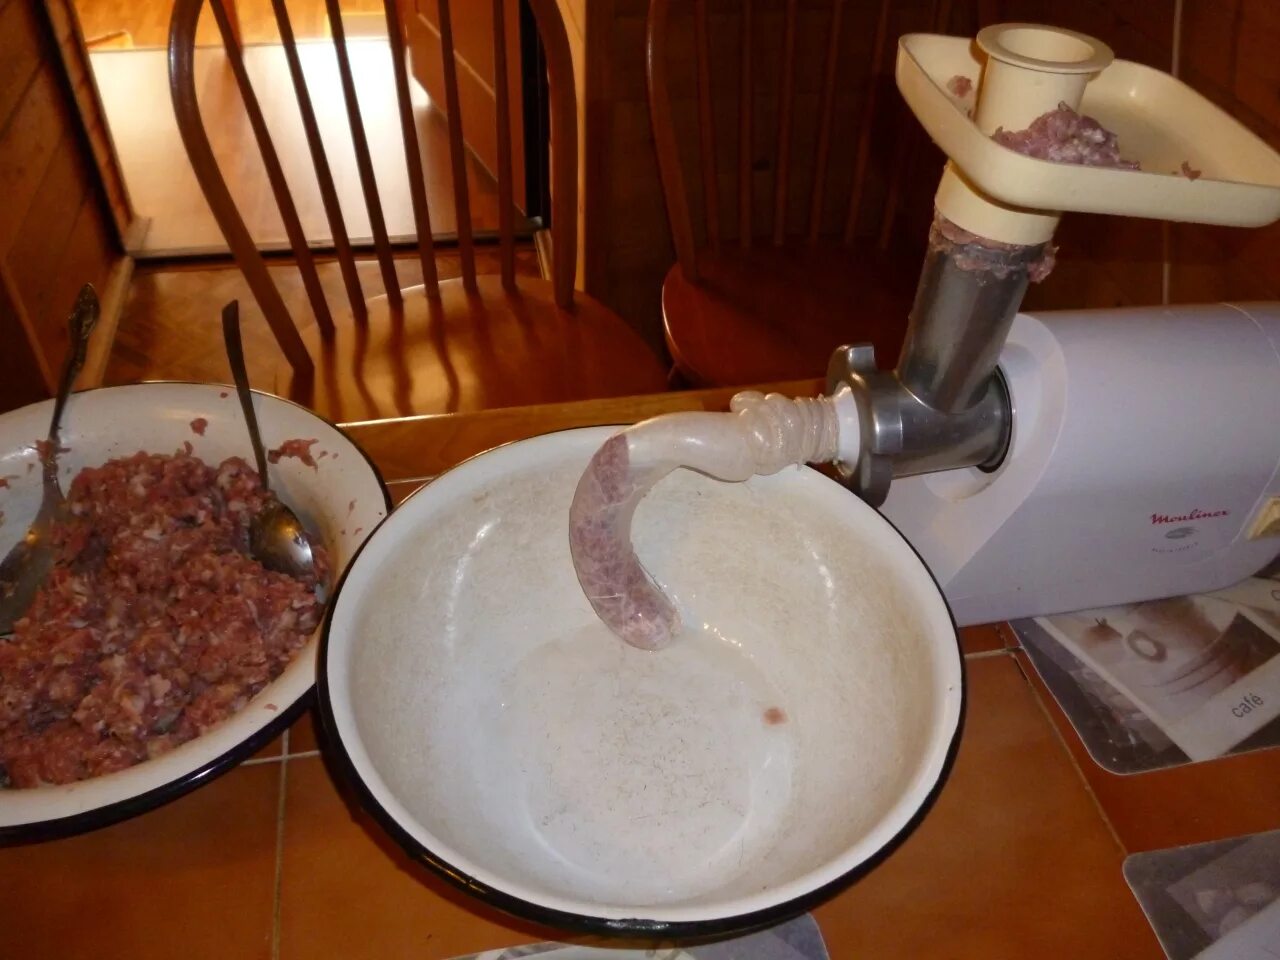 Рецепт домашней колбасы через мясорубку. Набивка колбасы через электромясорубку. Сборка электромясорубки для домашней колбасы. Домашняя колбаса на мясорубке.